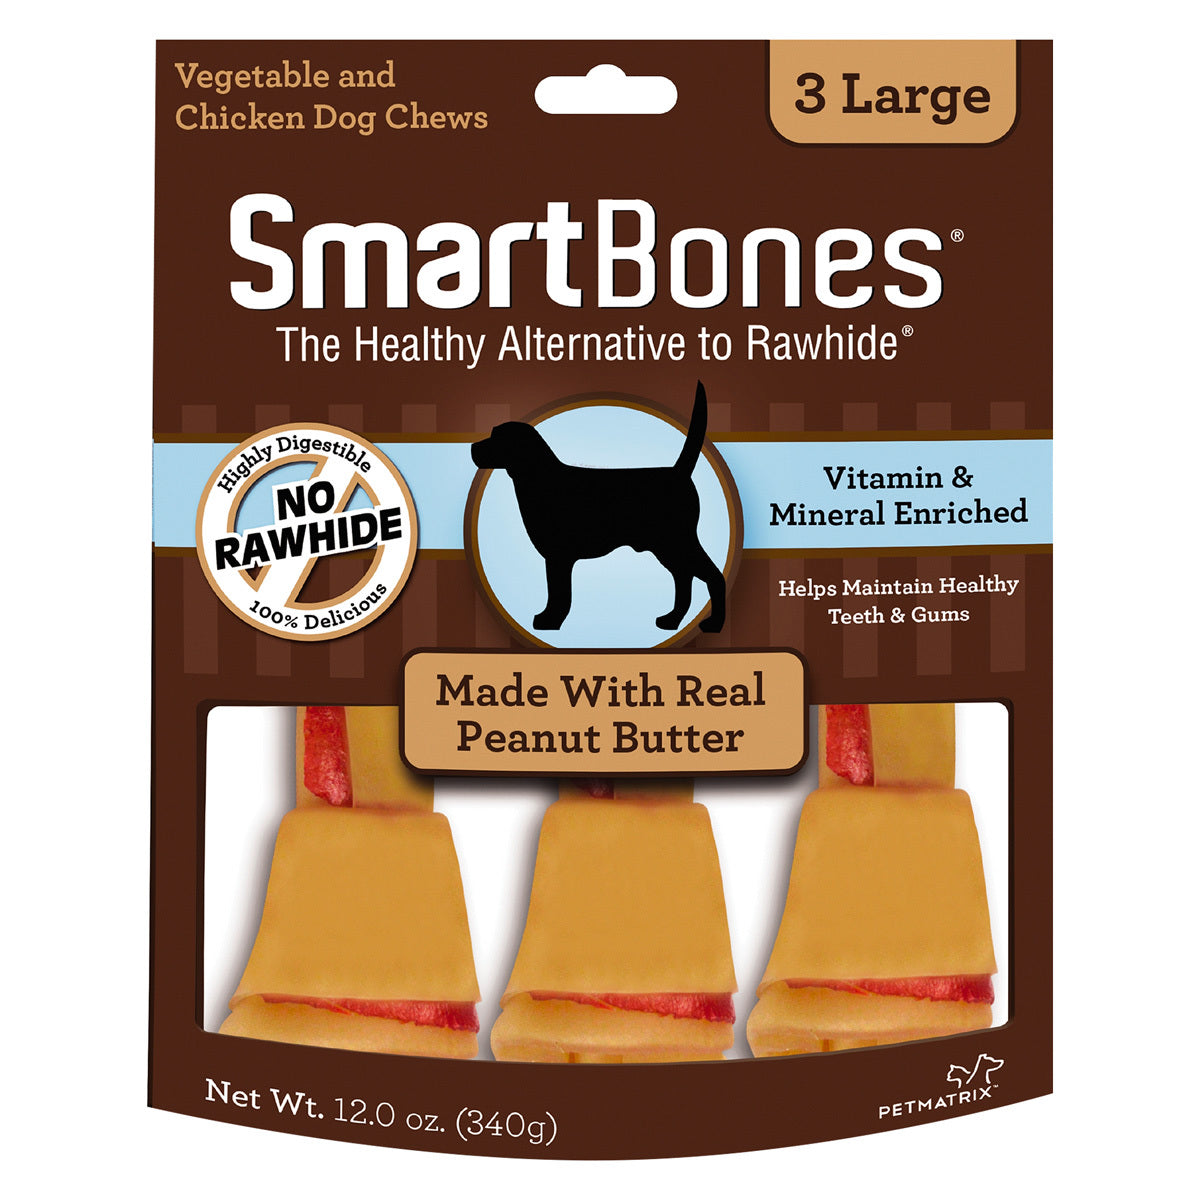 SmartBones Carnaza Vegetal Huesitos Receta Crema de Cacahuate Tamaño Grande para Perro 3 Piezas